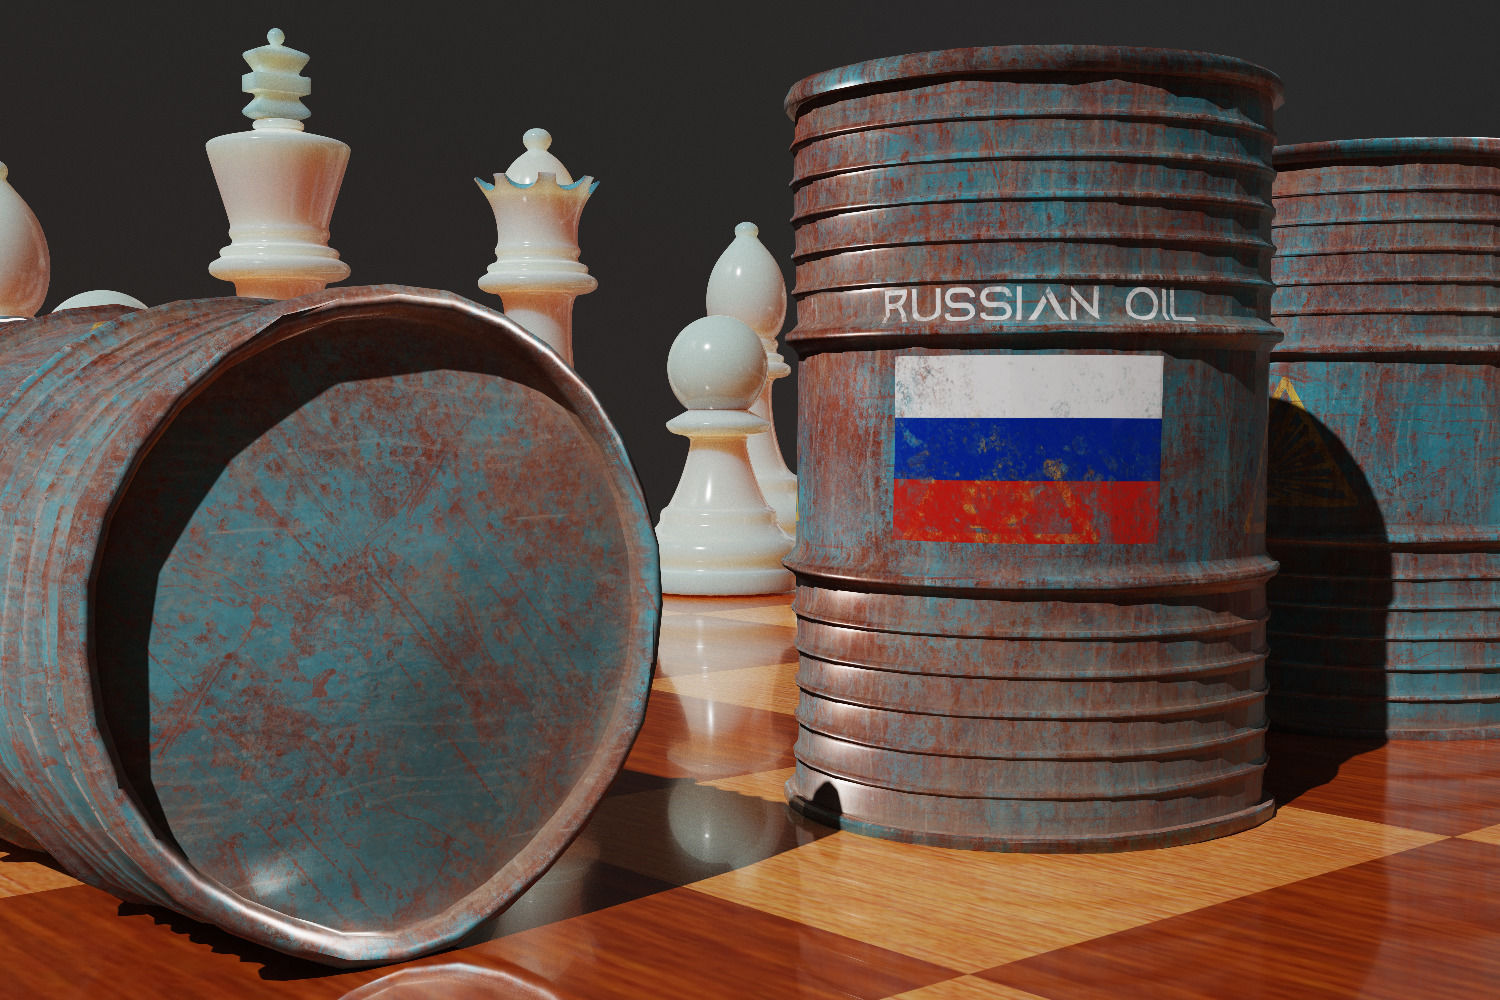 Сбои рынка будут сильнее: в ЕС не могут договориться о предельной цене на российскую нефть